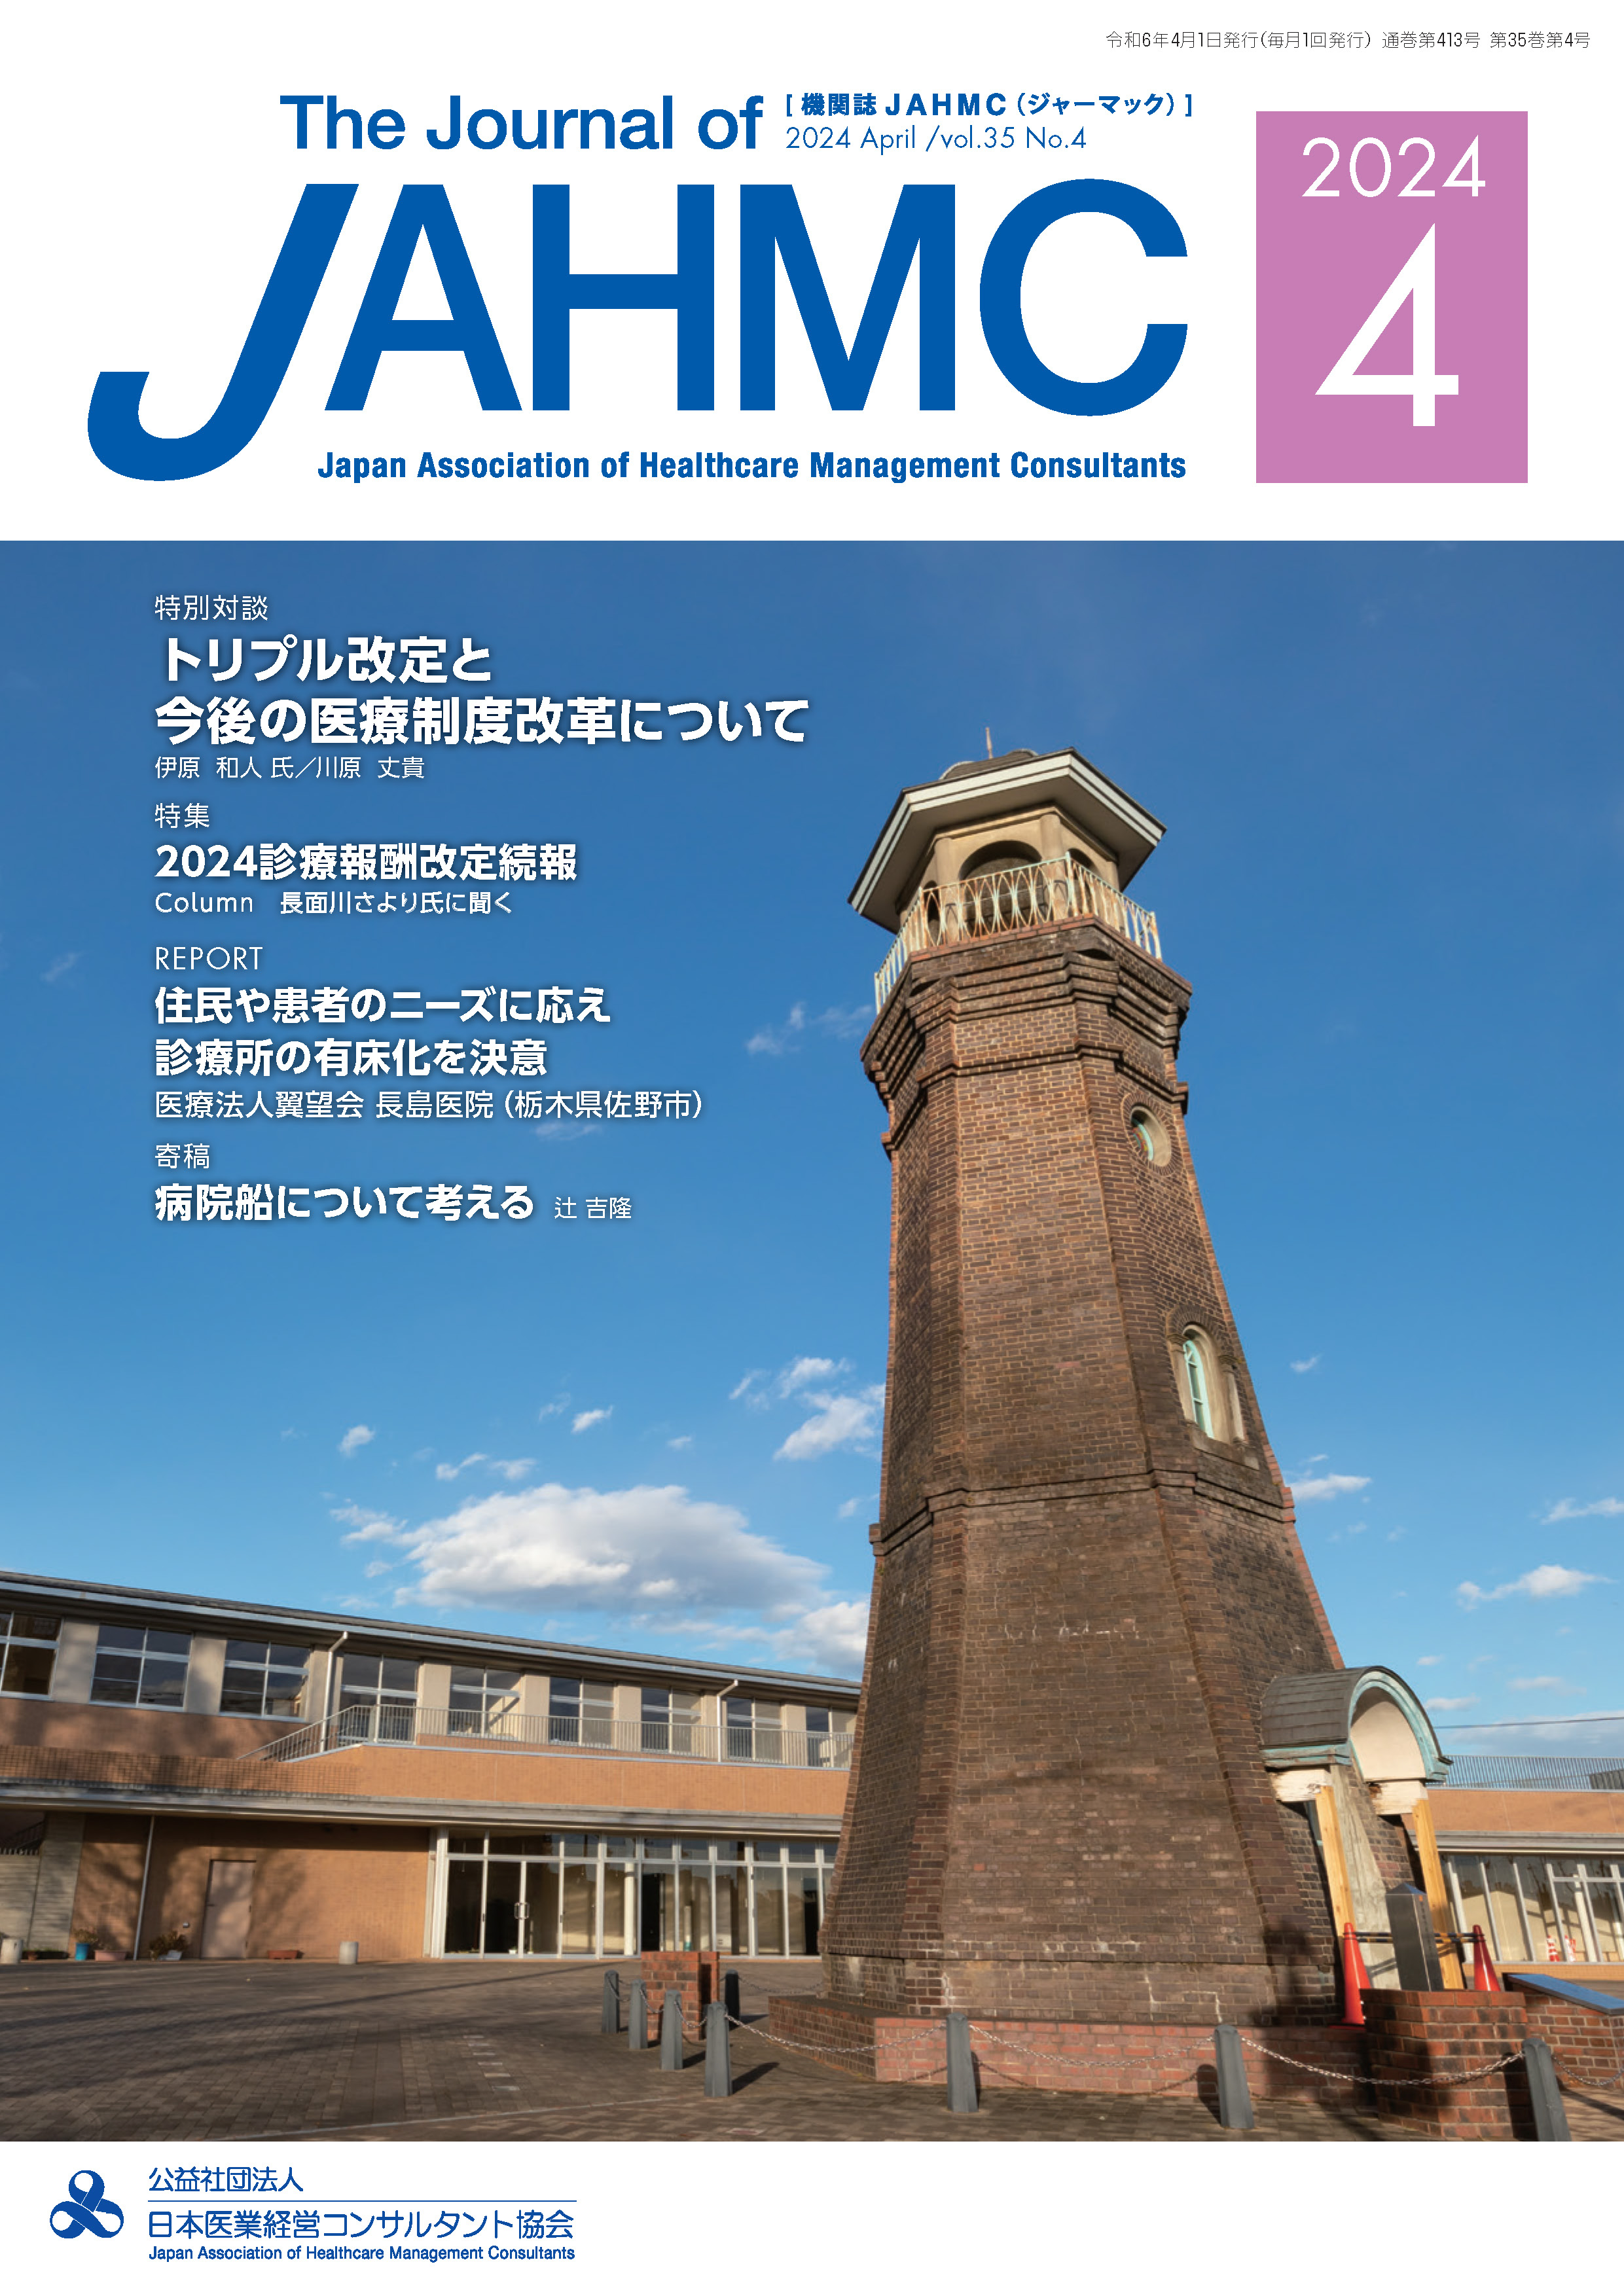 機関誌JAHMC(ジャーマック)最新号の表紙